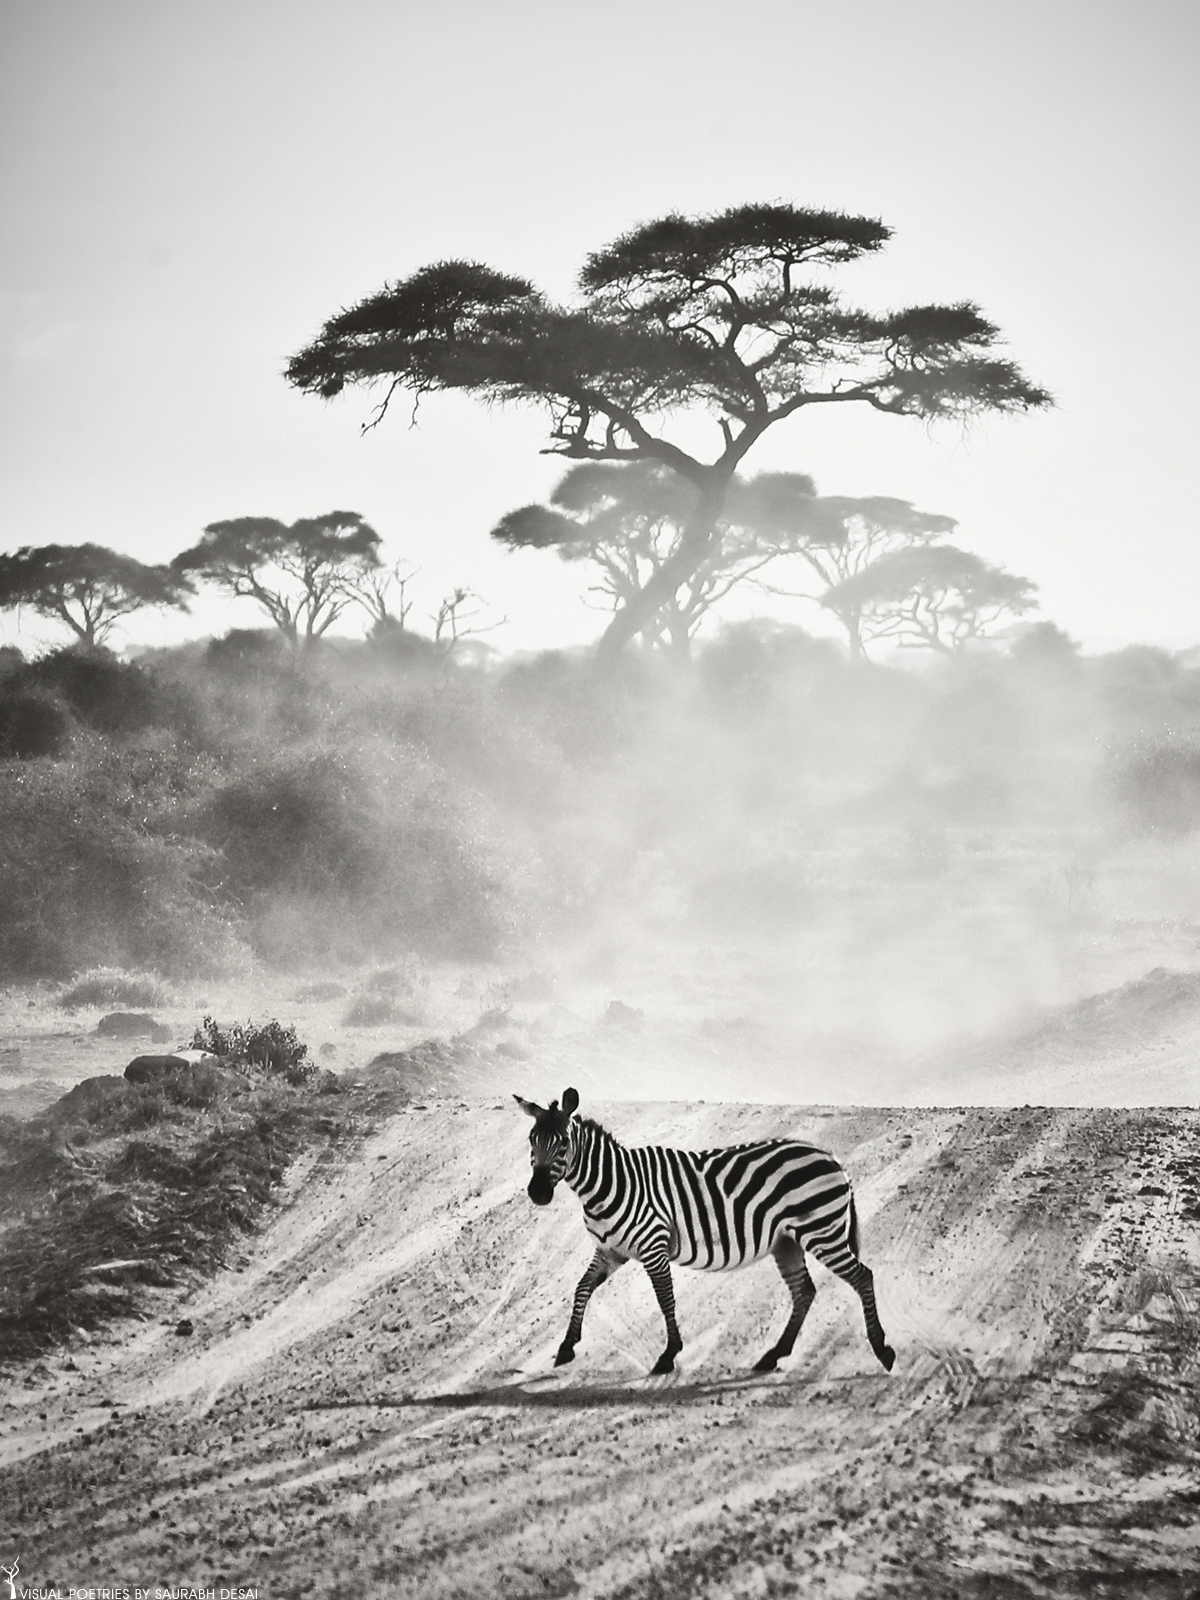 Zebra scape, monochrome